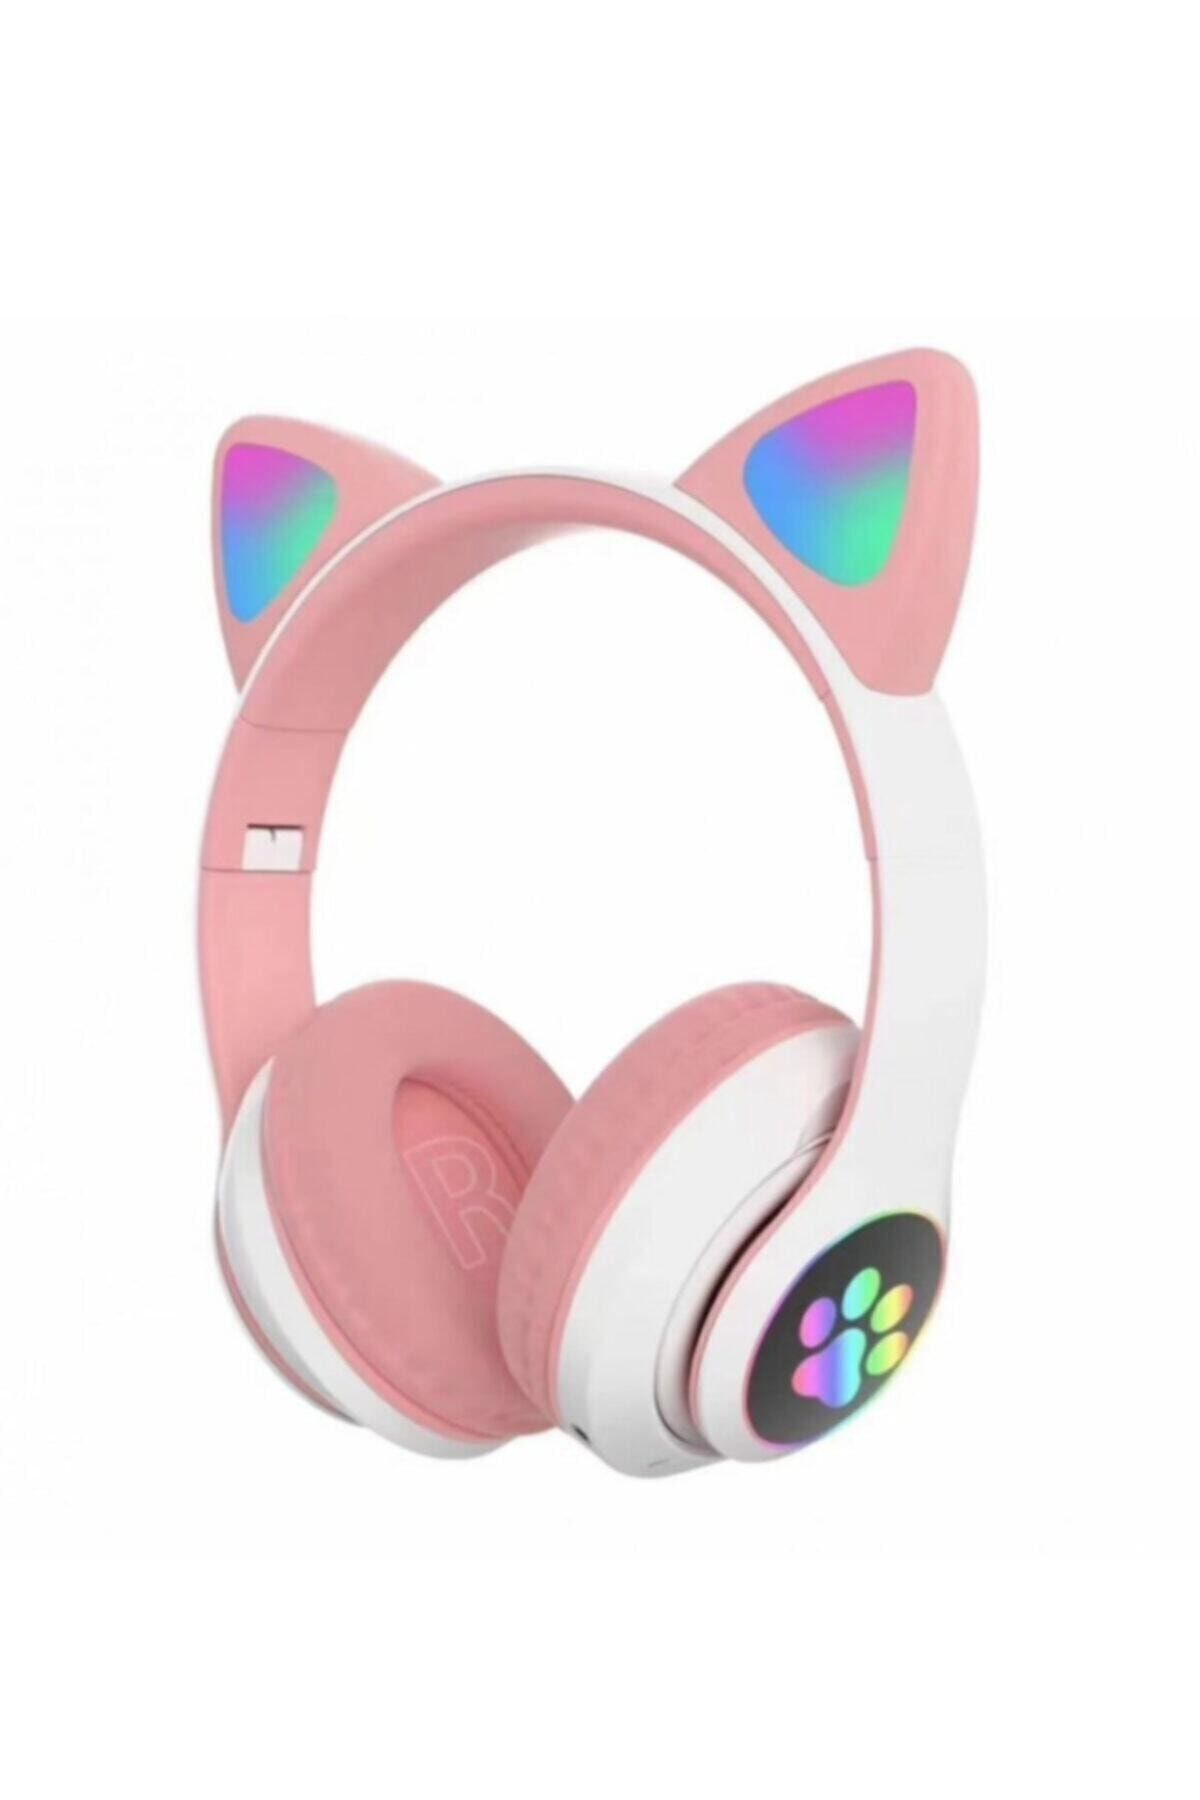 Techatech Kablosuz Kedi Kulaklık Işıklı Kulaküstü Mikrofonlu Bluetooth Hafıza Kartı Girişli Çocuk Kulaklığı